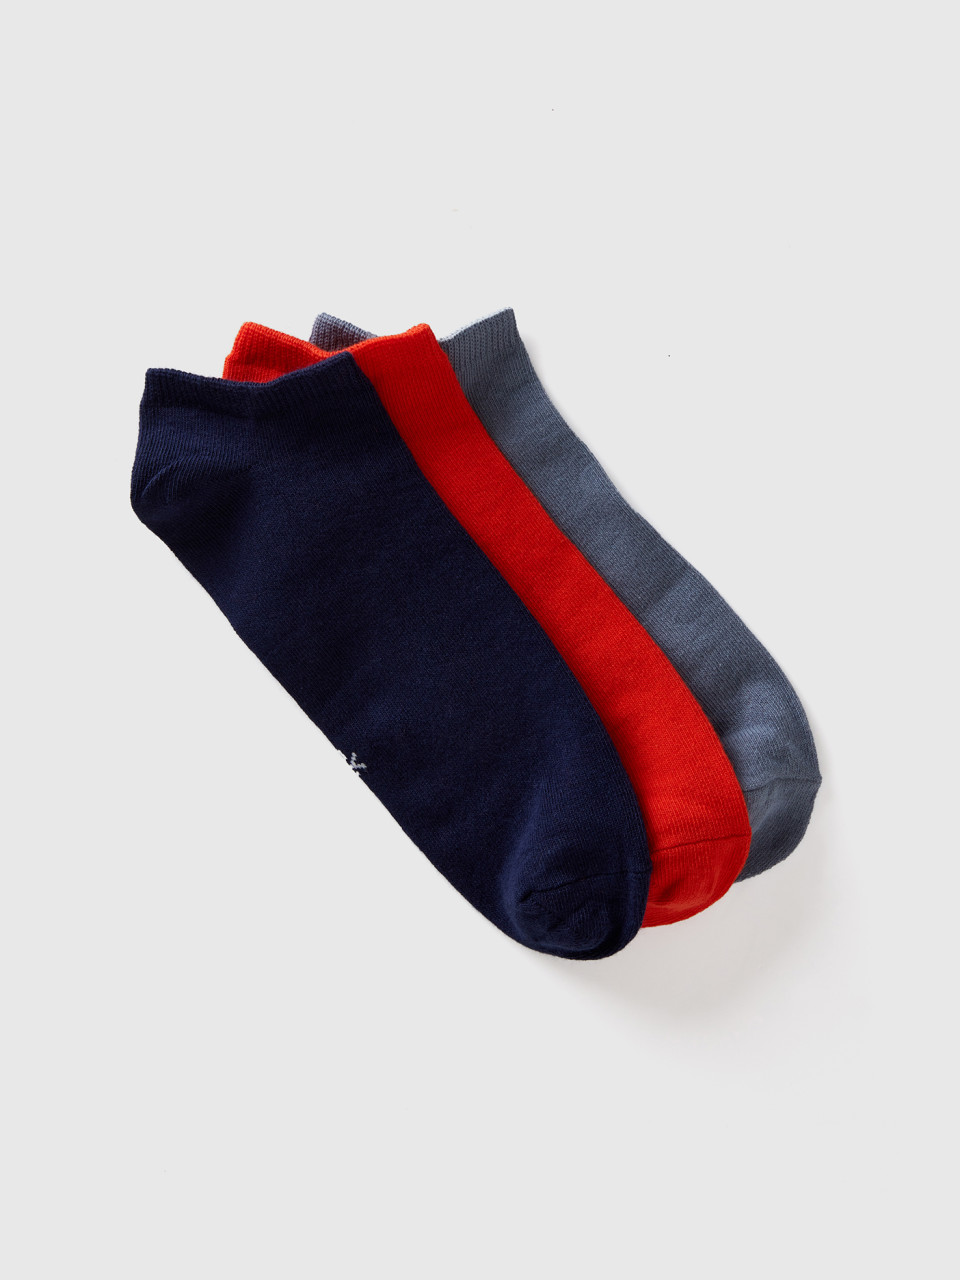 Benetton, Set Of Very Short Socks, Multi-color, Men